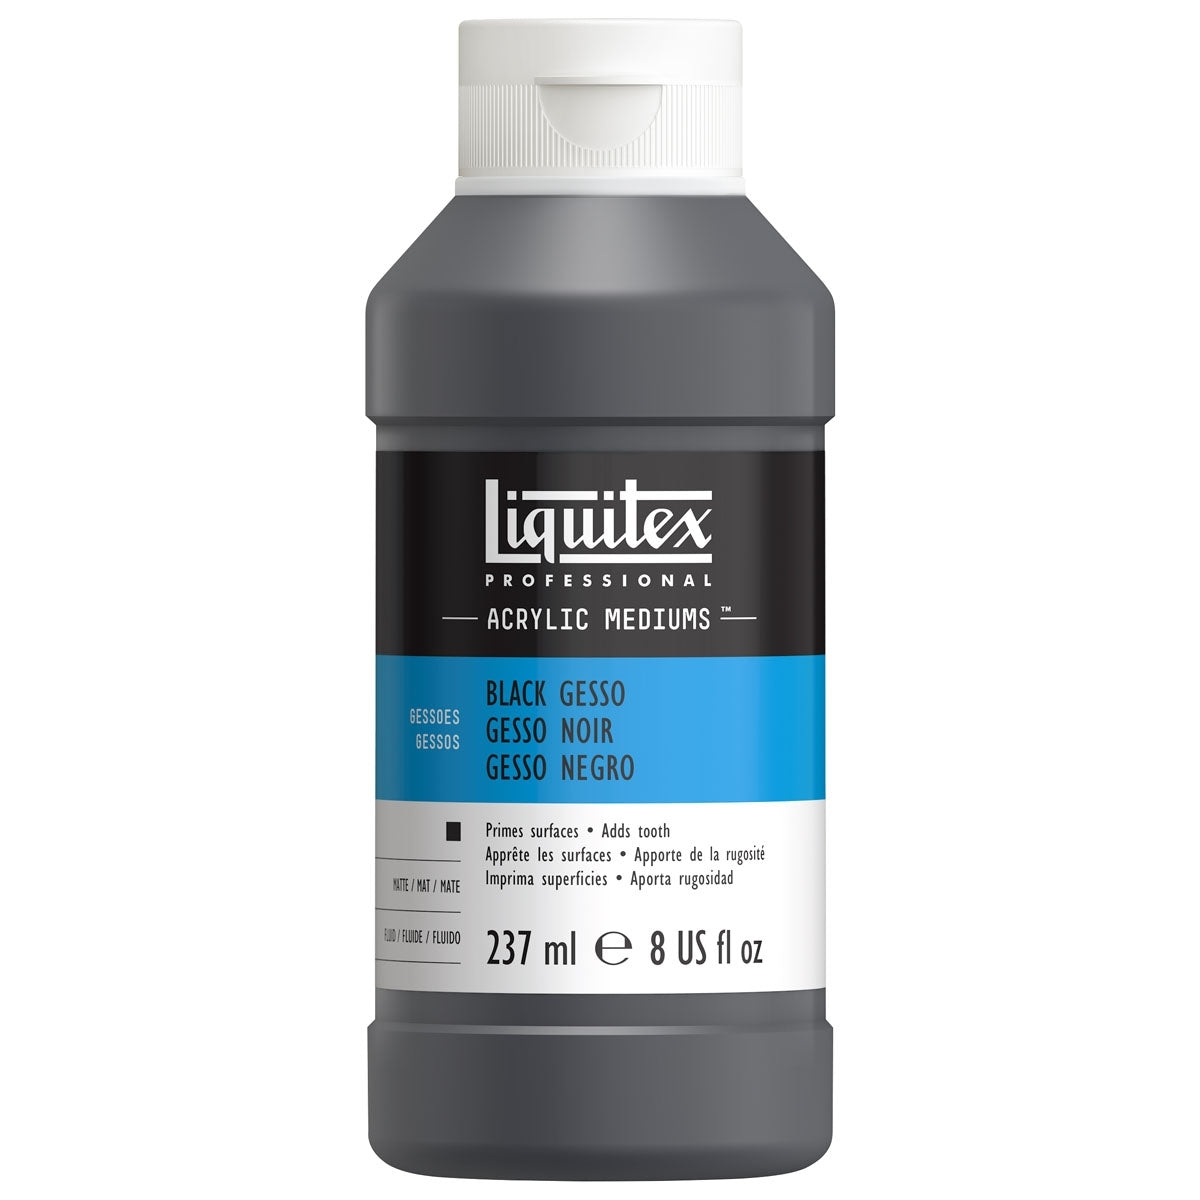 Liquitex - Black Gesso 237 ml